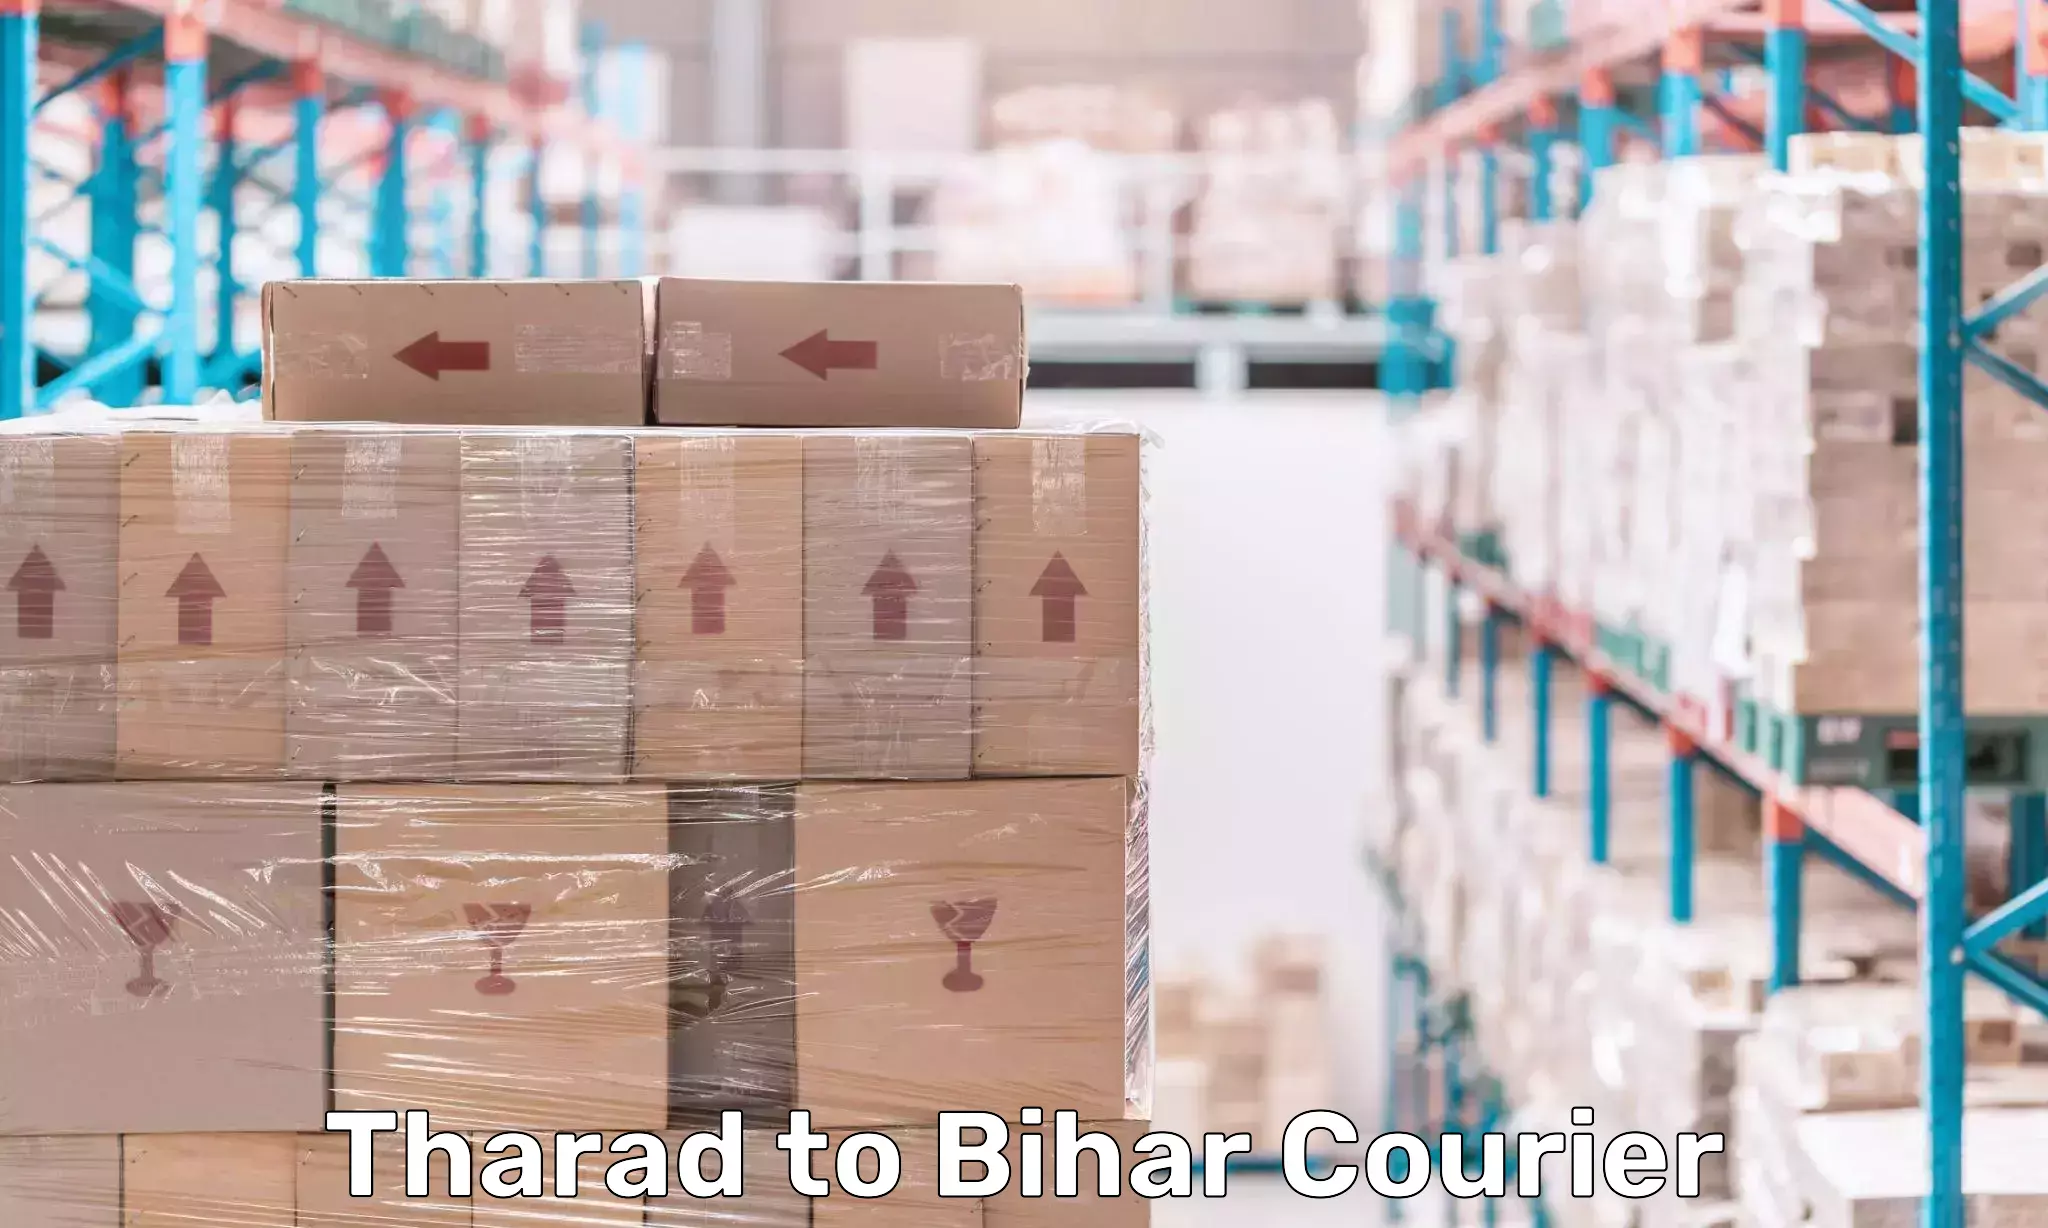 High-capacity shipping options Tharad to Banka